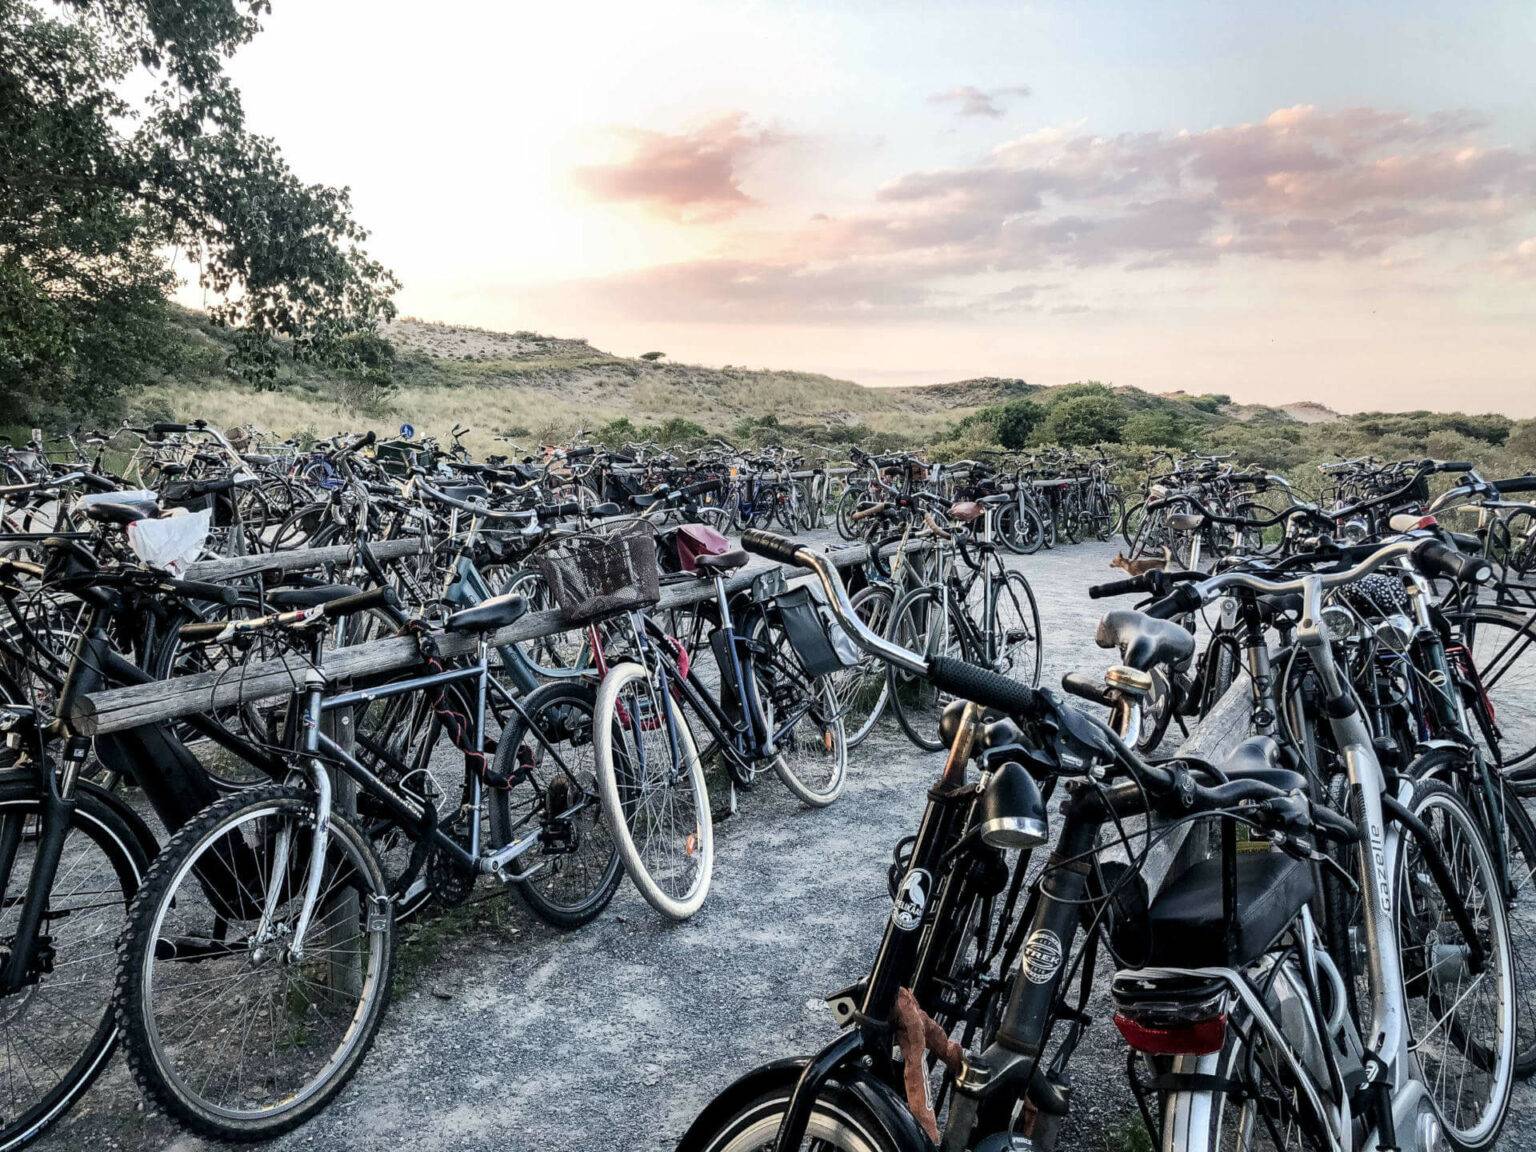 Parkplatz à la Holland. Die besten Strandabschnitte erreicht man in den Niederlande meist stilgerecht mit dem Fahrrad.